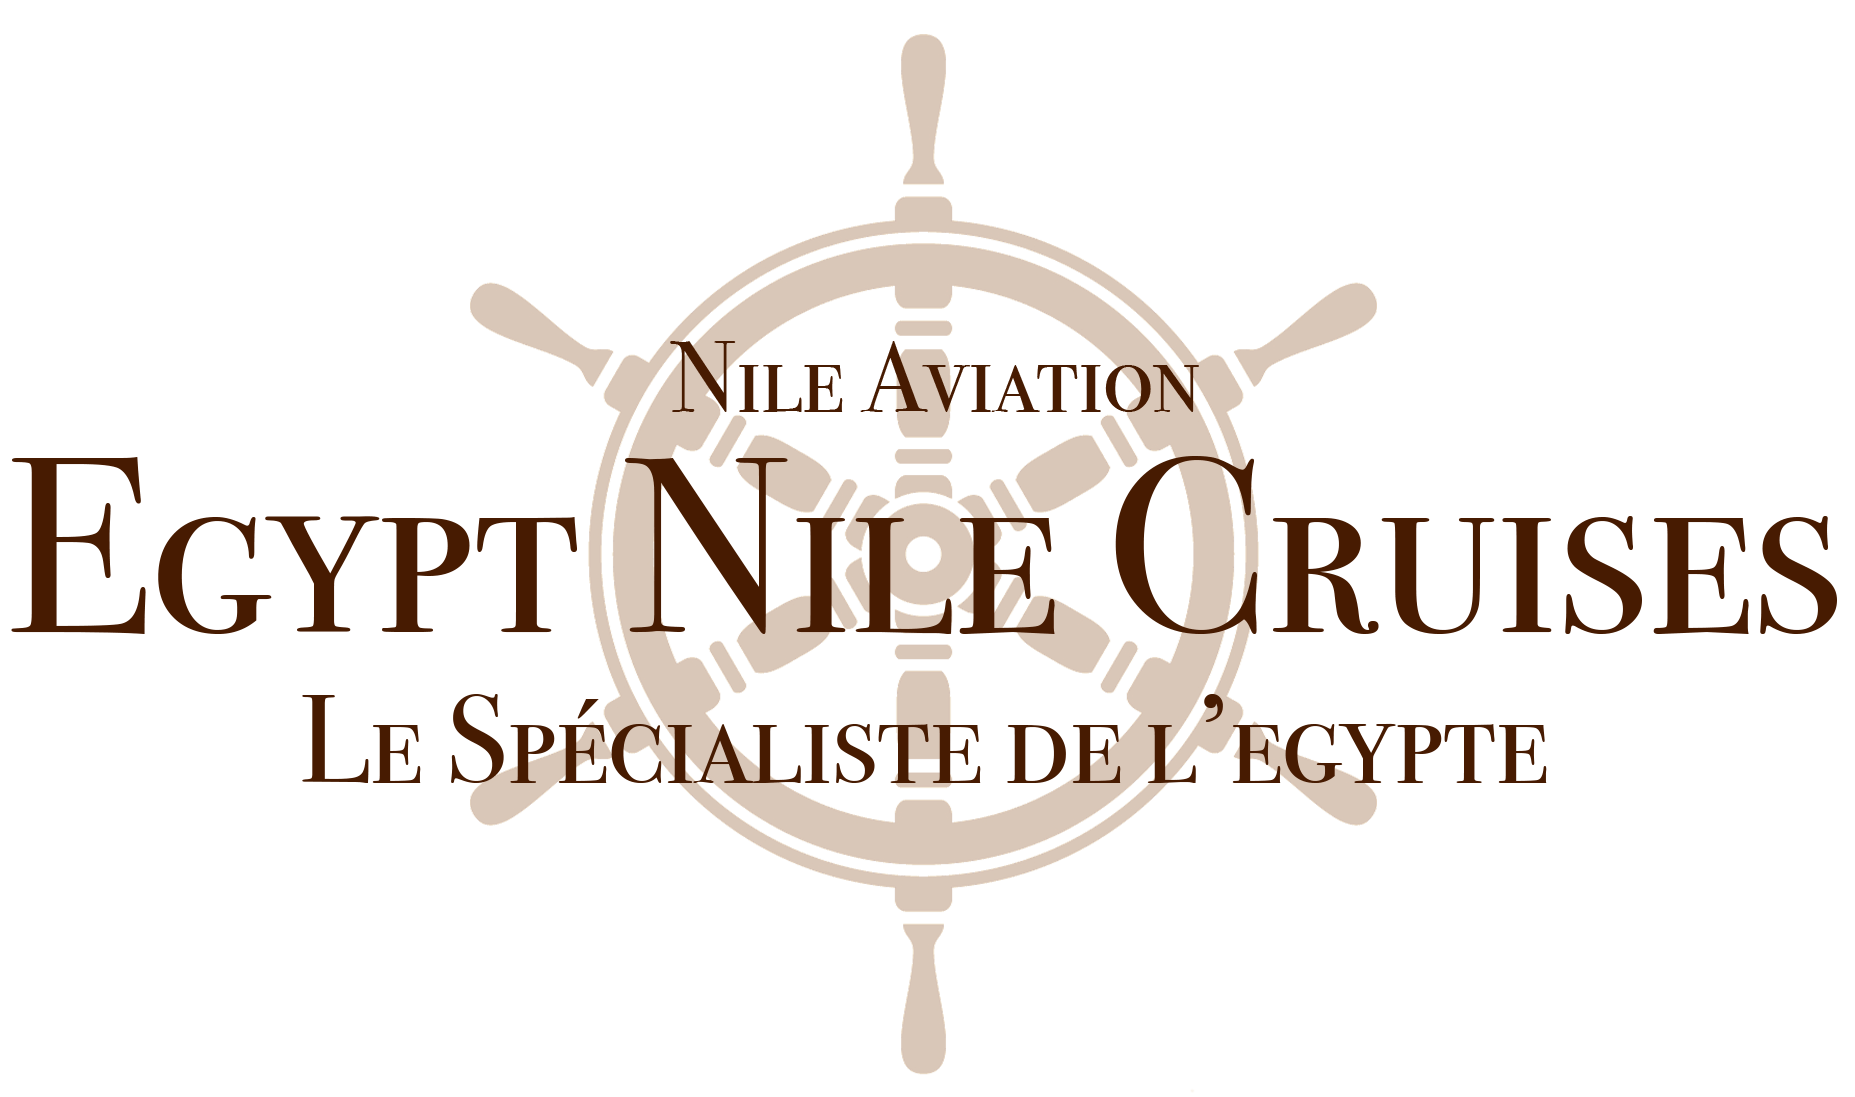 Egypt Nile Cruises, Nile Aviation, Agence de voyage Egypte, Agence de voyage France, Paris, croisière sur le Nil, Dahabiya sur le Nil,  voyage en Egypte, logo ENC Voyages,  